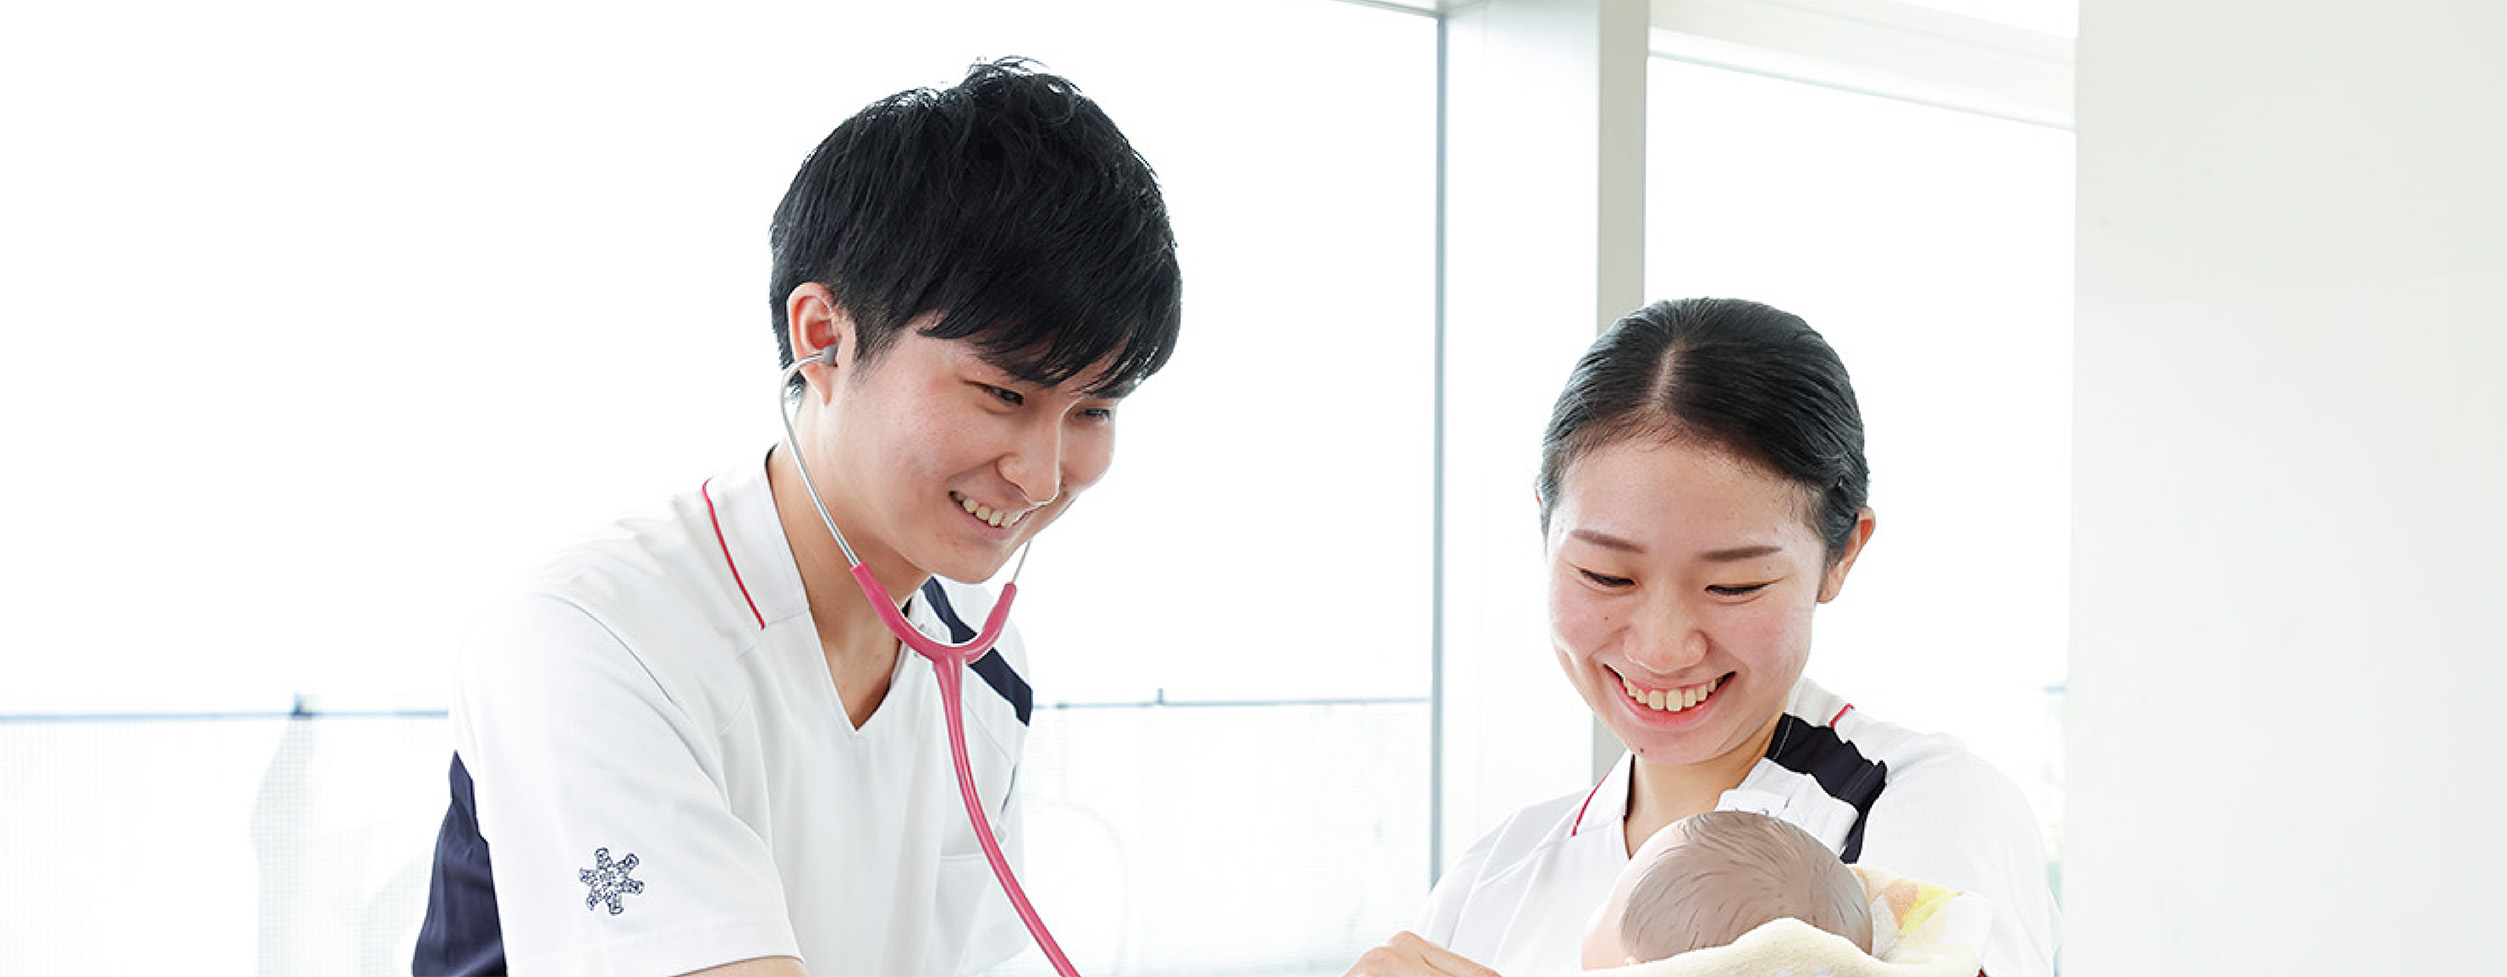 昭和大学横浜市北部病院7階A病棟　新人看護師取材